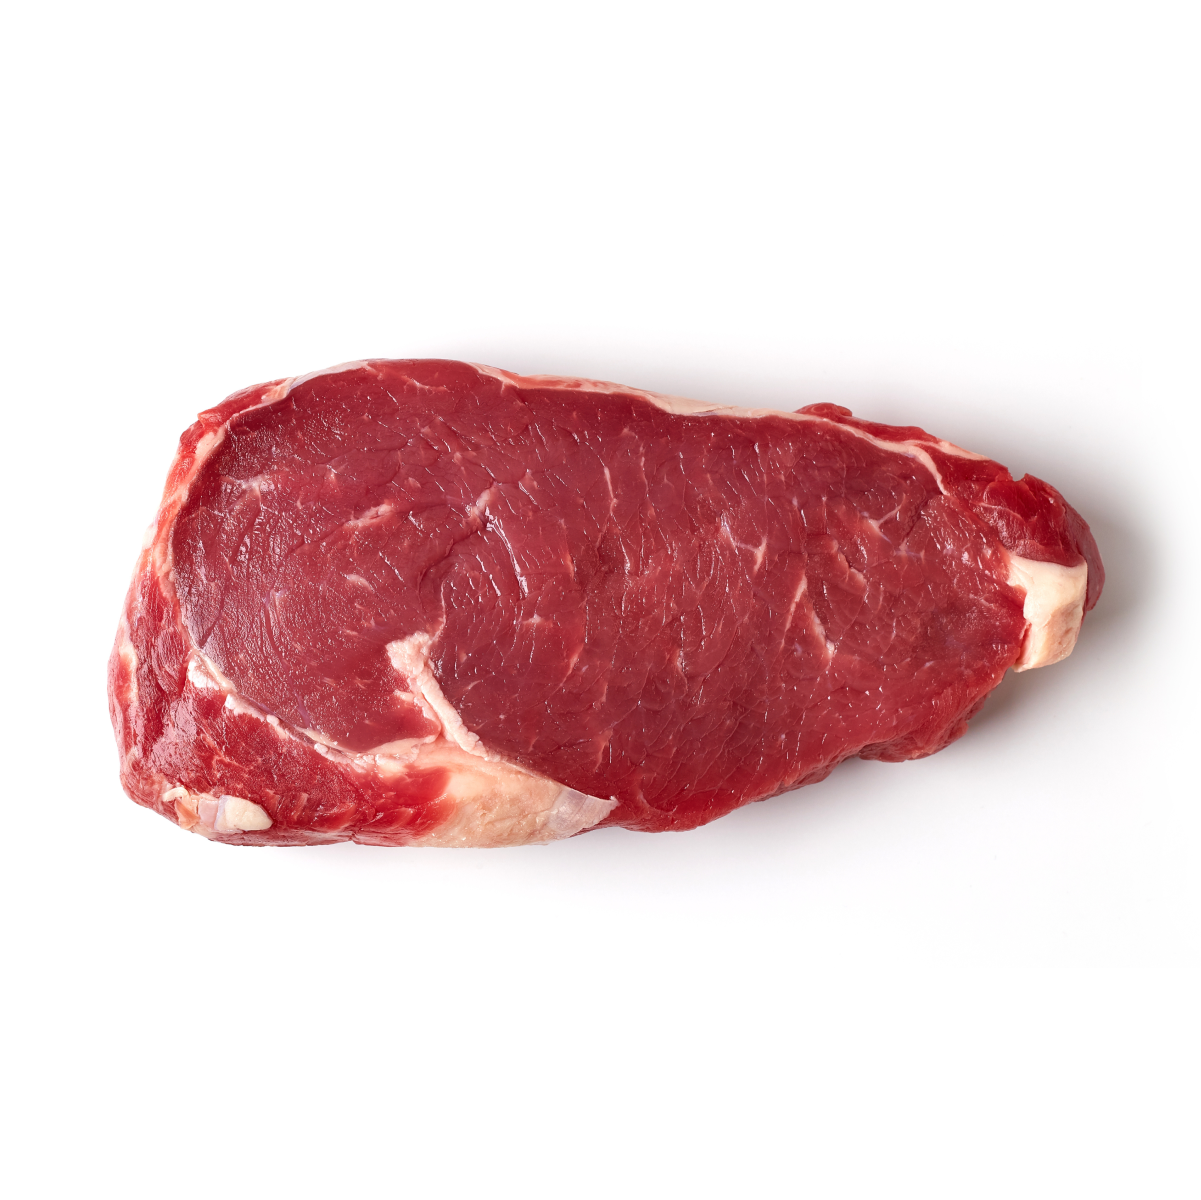 80% Tender Beef